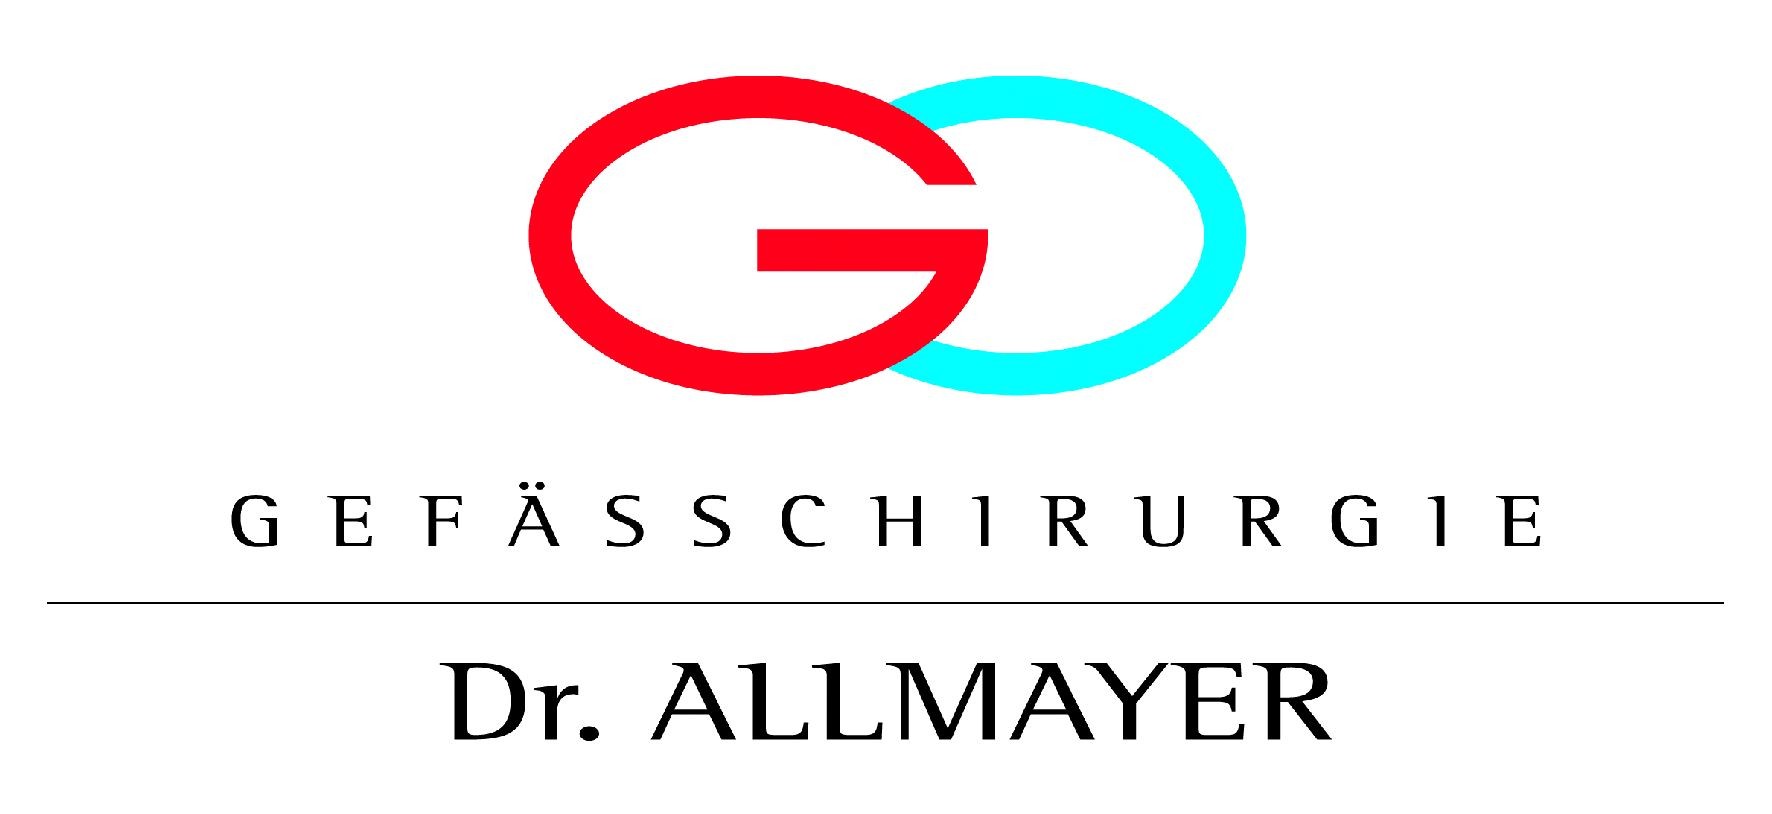 Logo von Dr. Allmayer, Ordniation für Gefäßchirugie